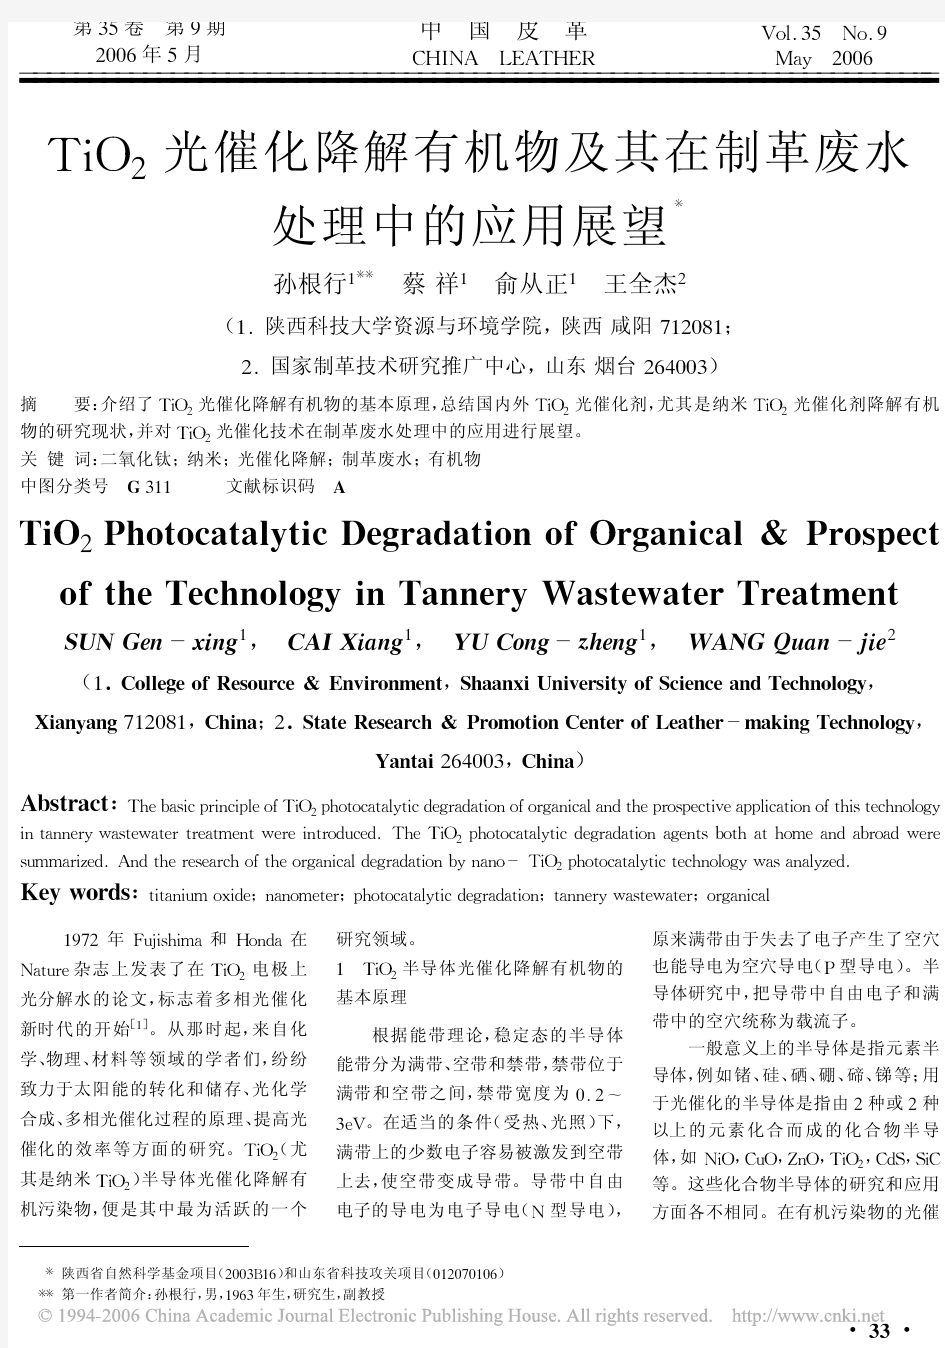 (综述)TiO_2光催化降解有机物及其在制革废水处理中的应用展望